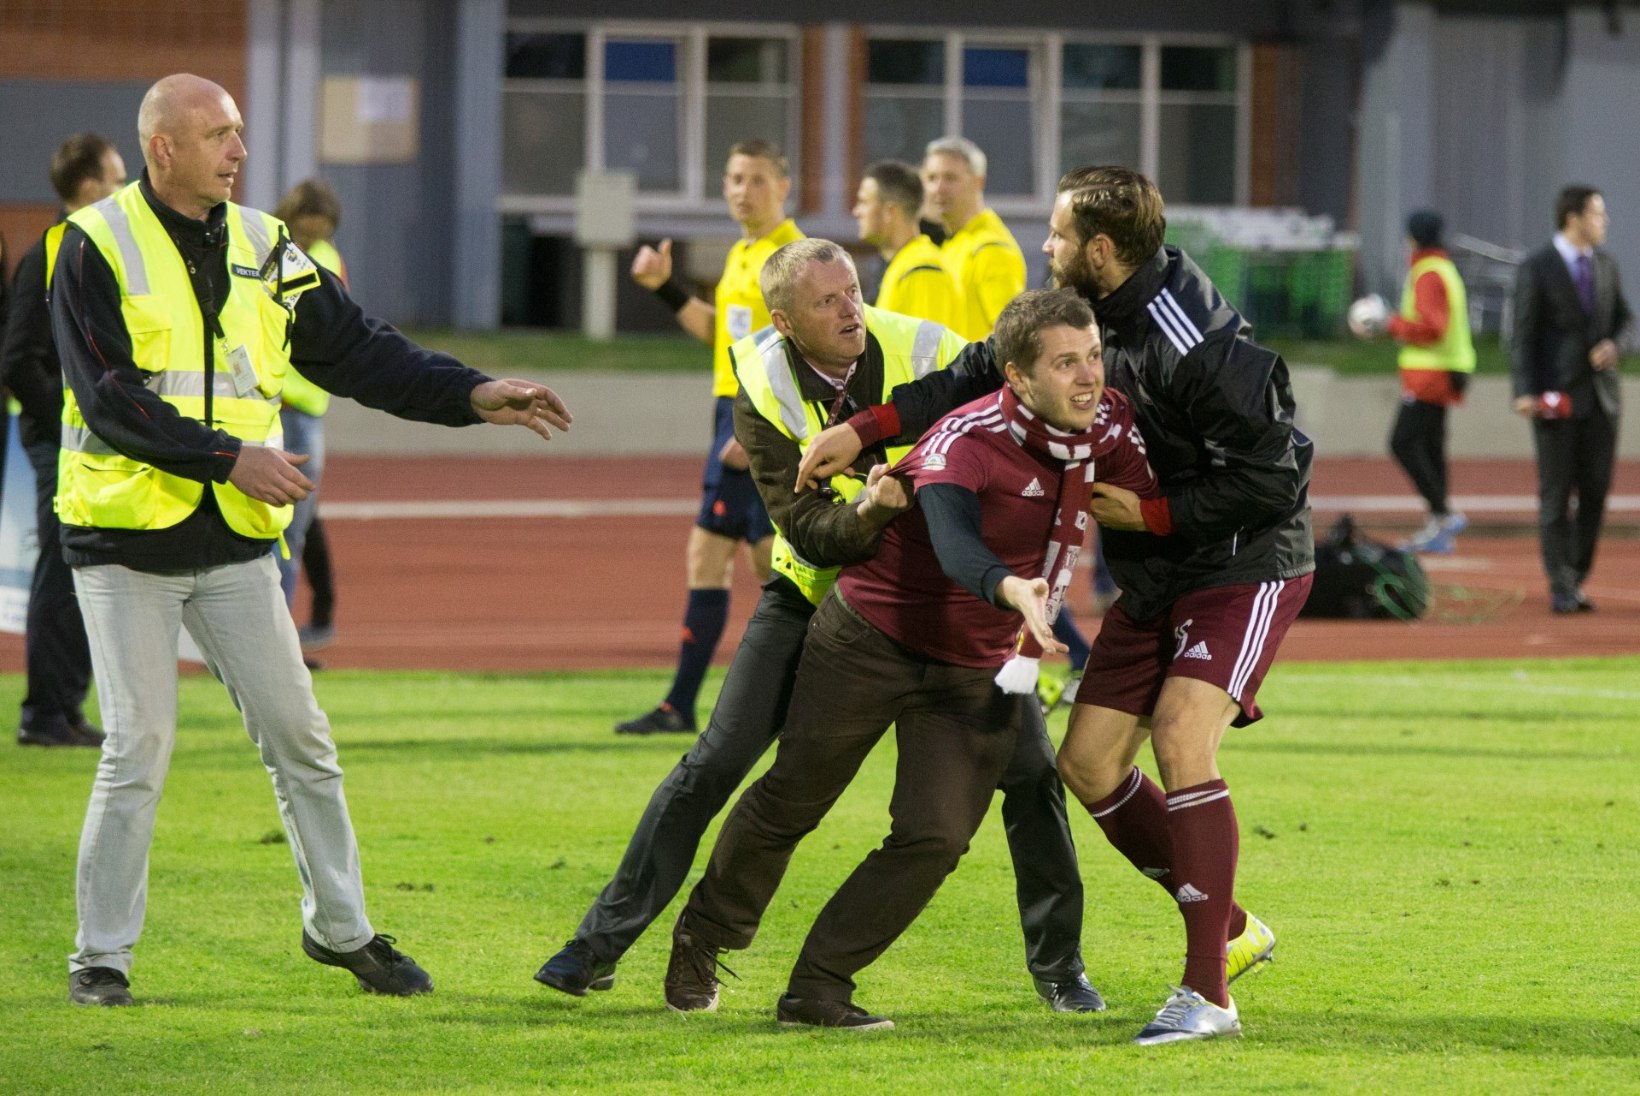 GALERII: Eesti jalgpallikoondise kaotus Lätile